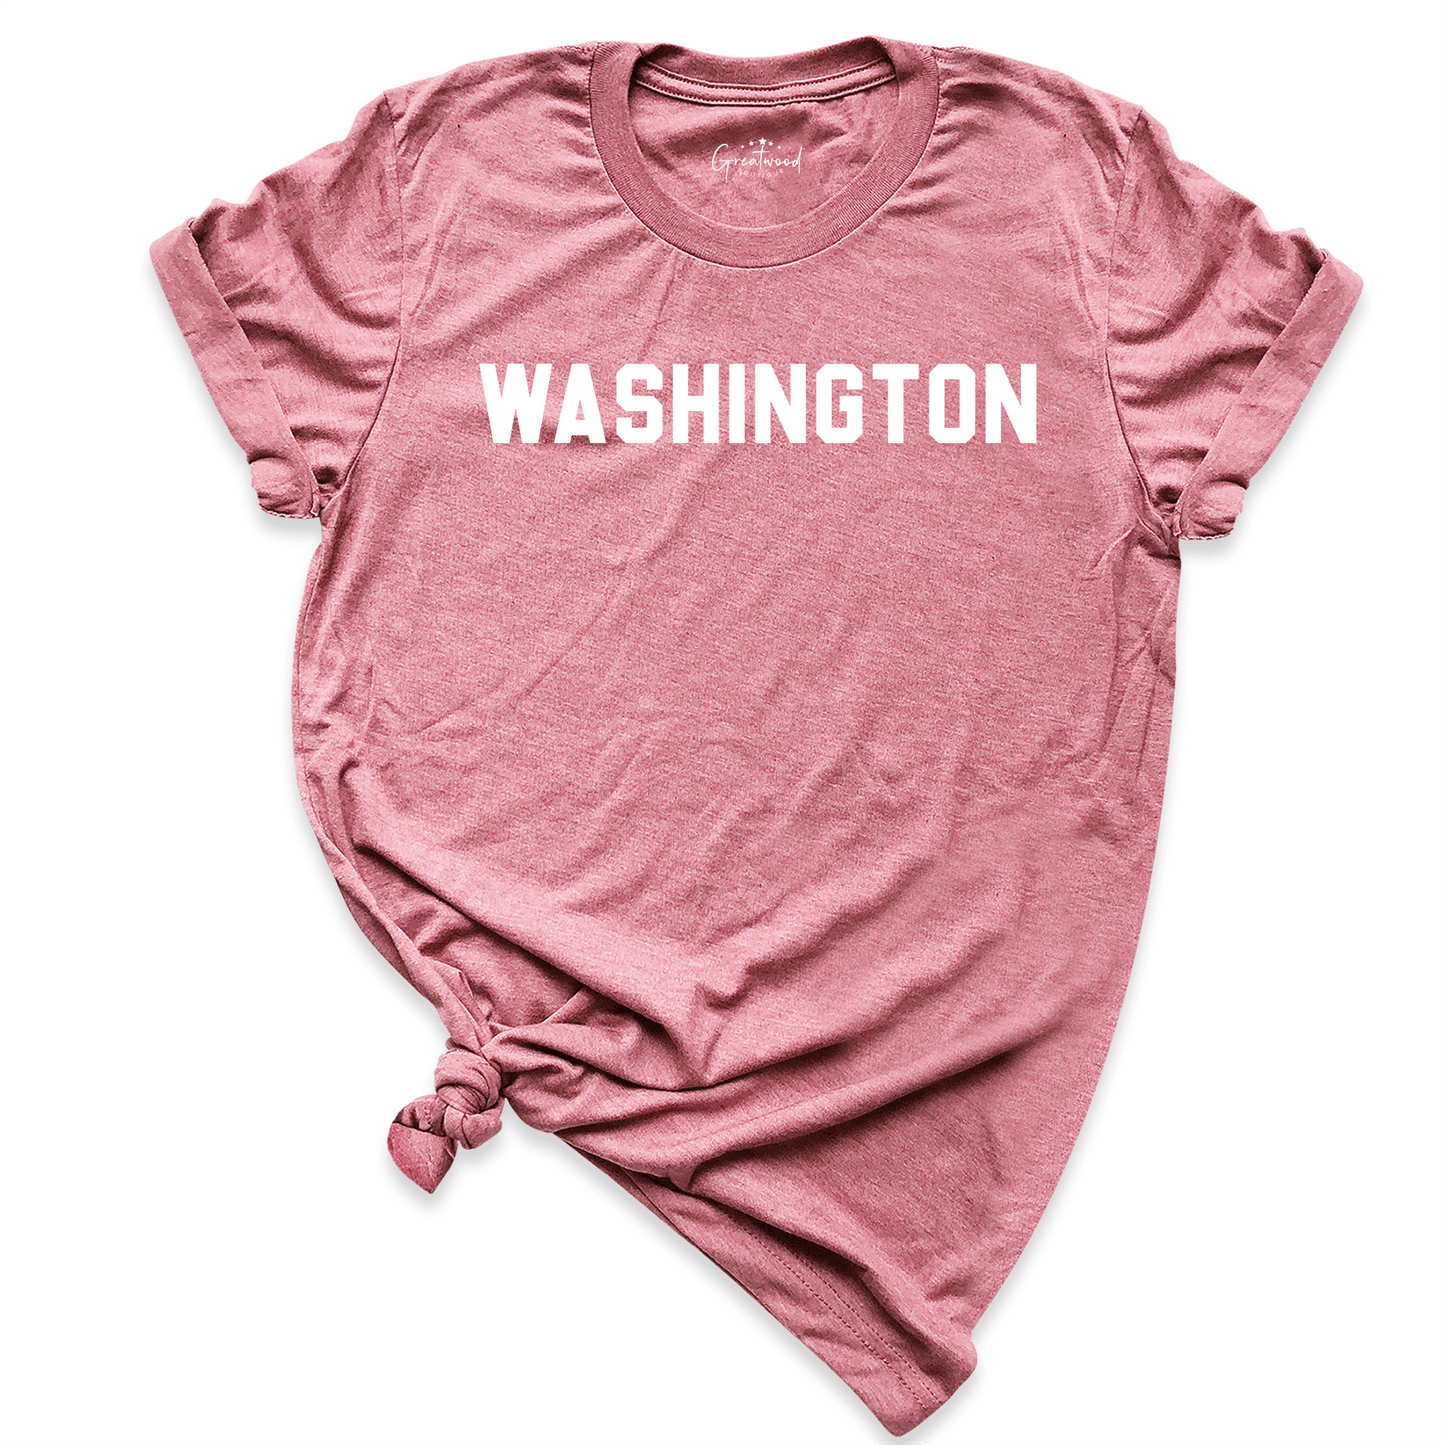 Washington Shirt